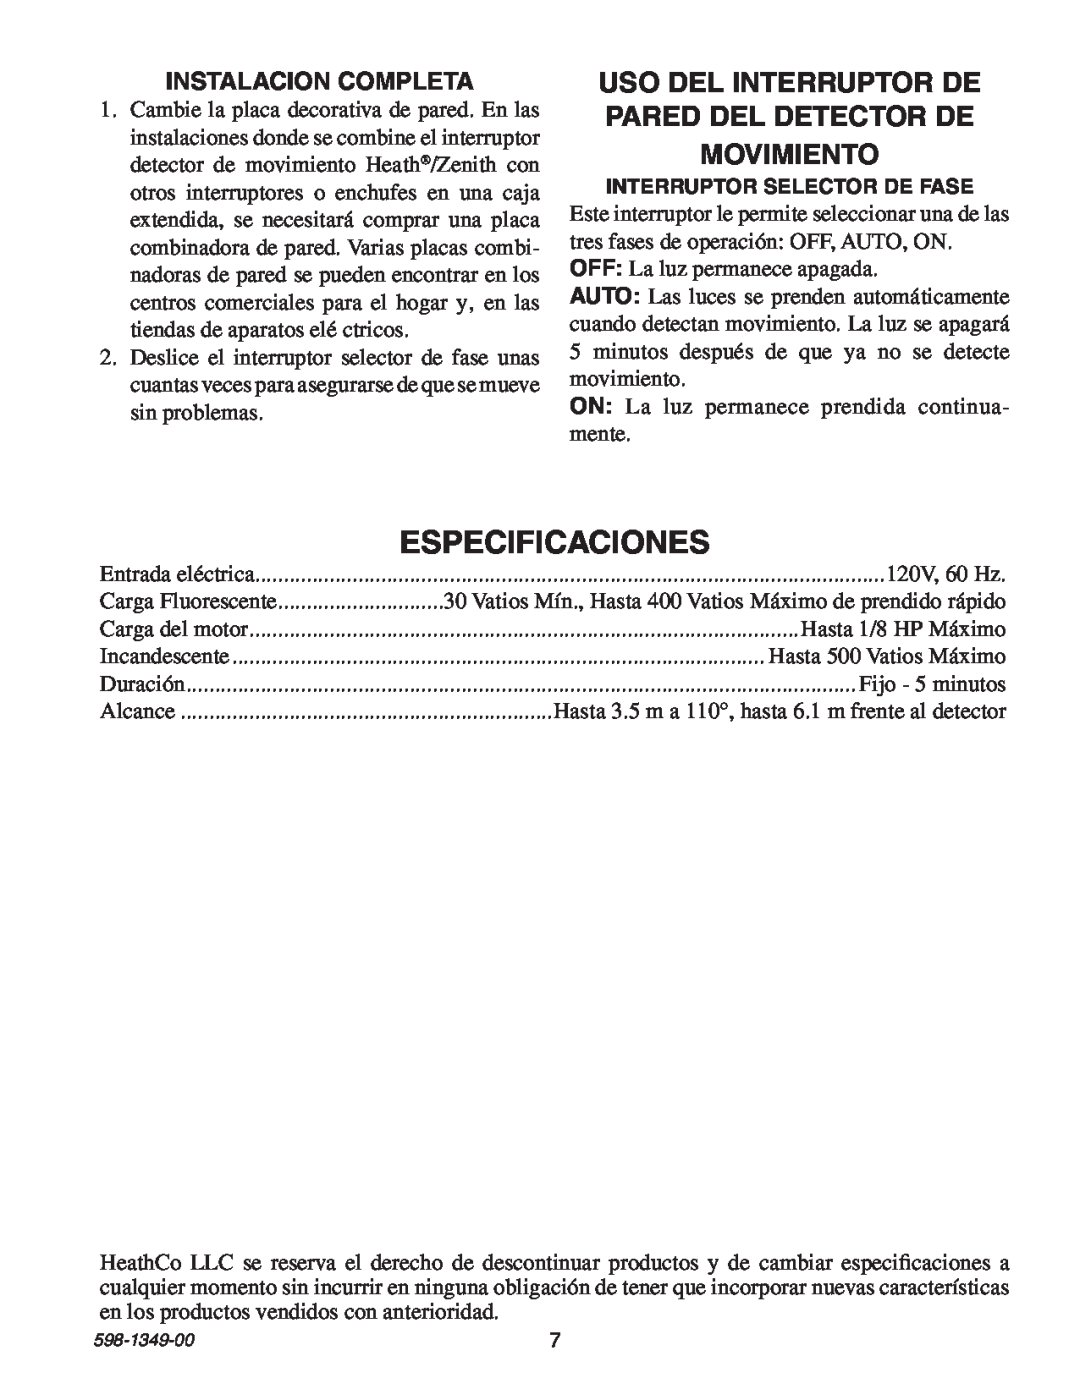 Heath Zenith 6103 manual Especificaciones, Uso Del Interruptor De Pared Del Detector De, Movimiento, Instalacion Completa 